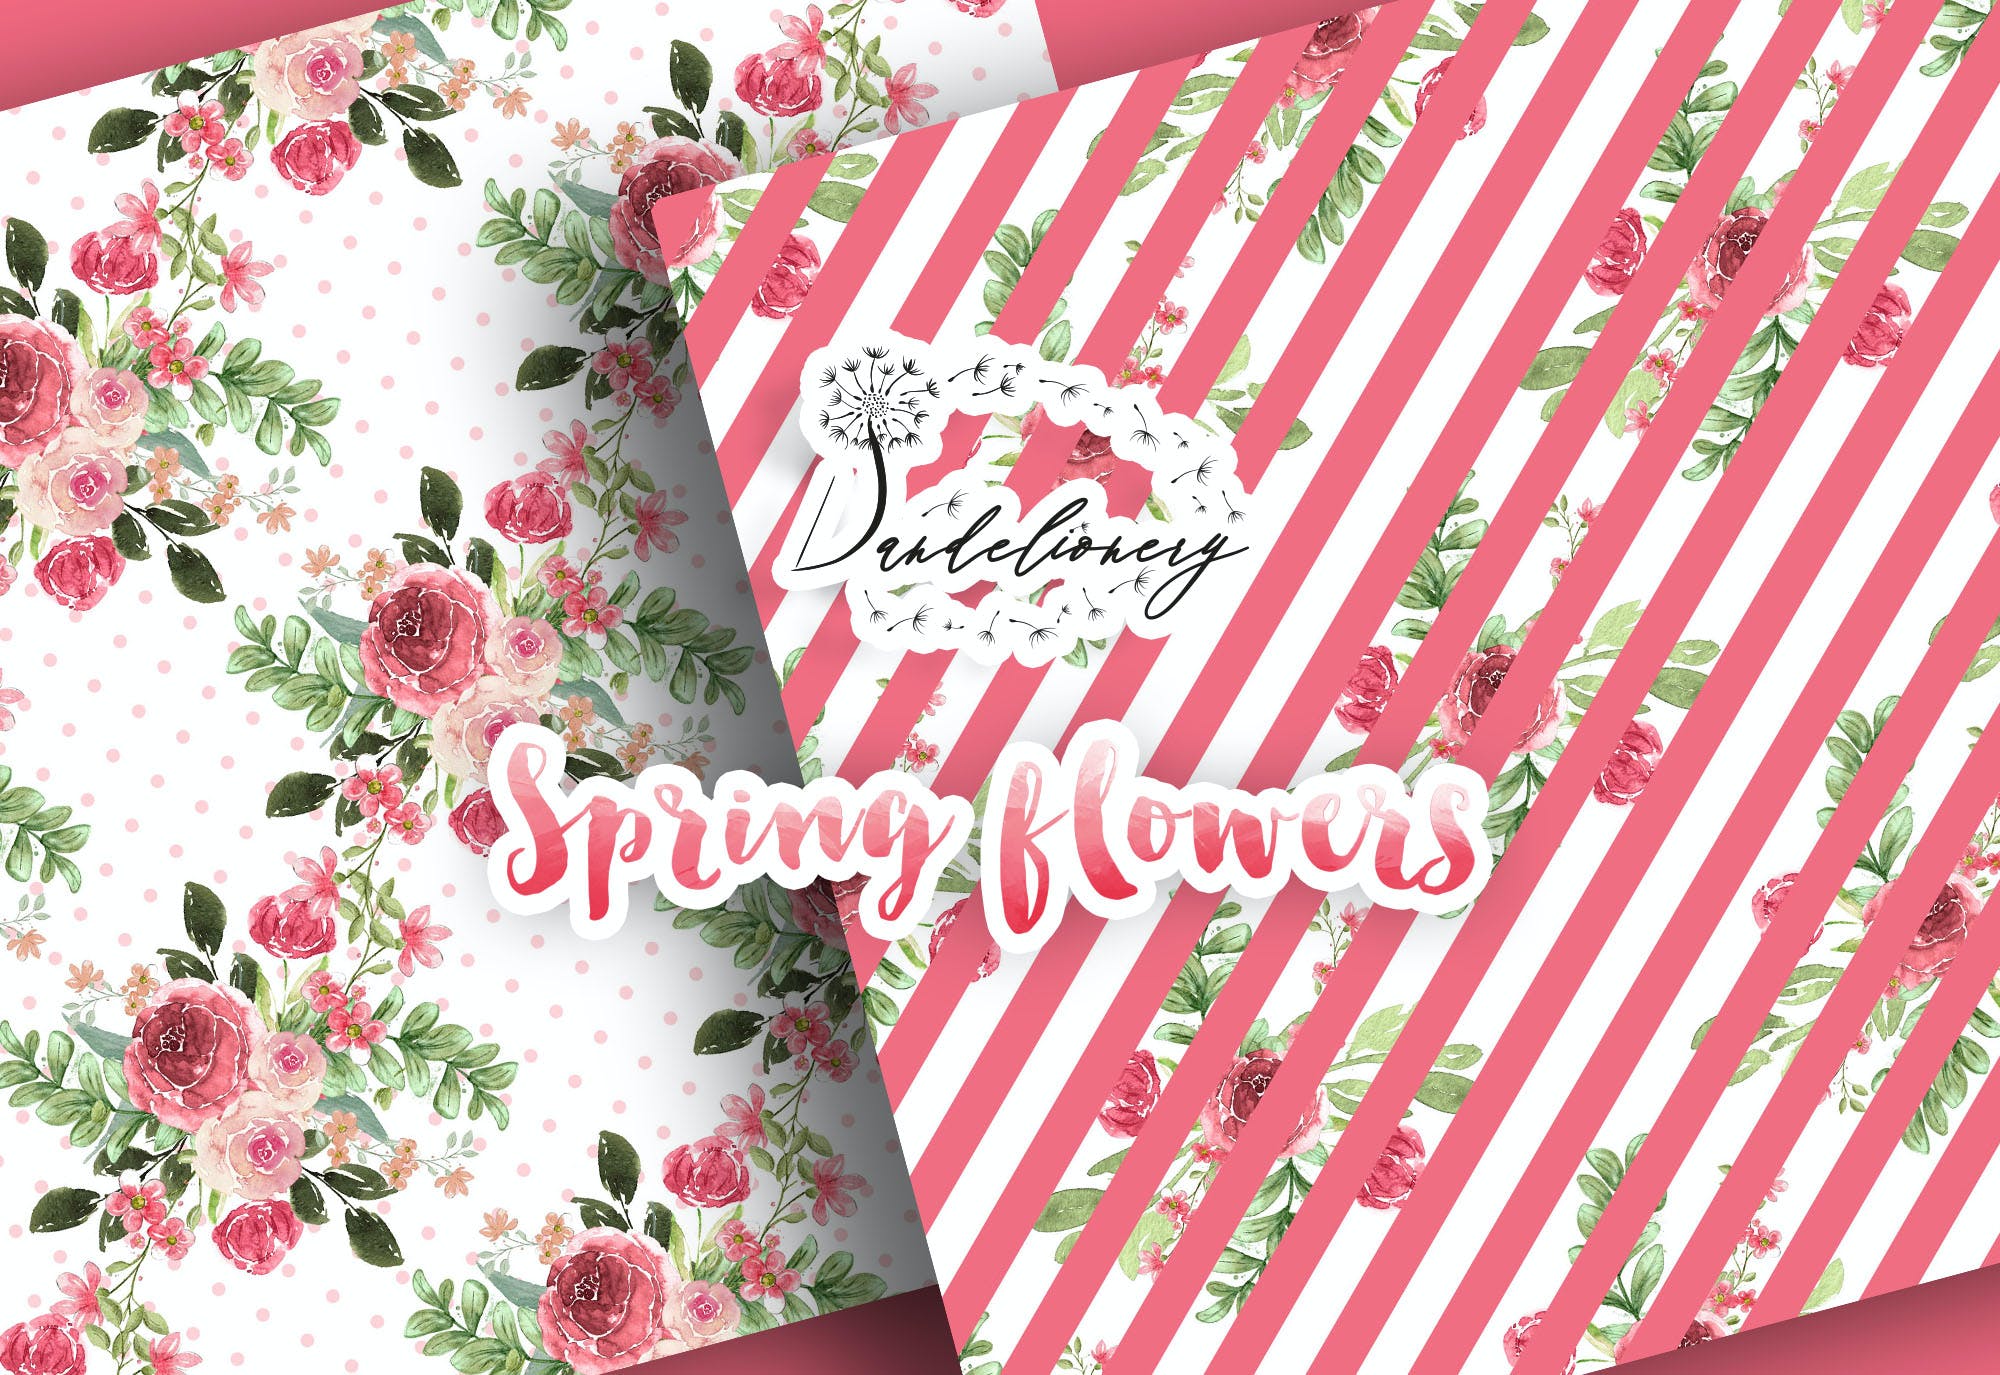 水彩春天花朵数码纸图案素材包 Spring flowers digital paper pack 设计素材 第2张